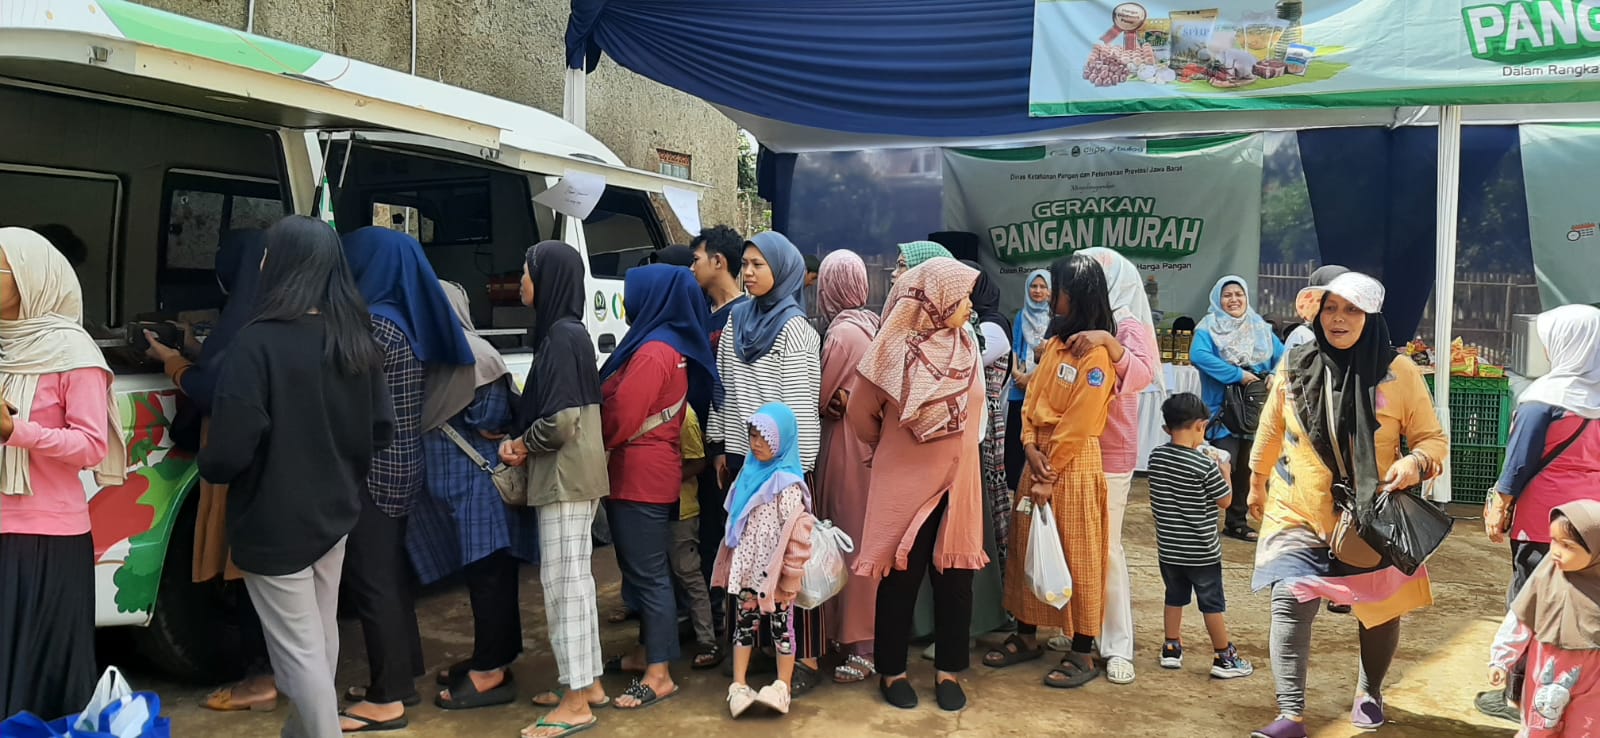 Gerakan Pangan Murah digelar Dinas Ketahanan Pangan dan Peternakan (DKPP) Provinsi Jawa Barat di wilayah Desa Cibiruwetan, Kecamatan Cileunyi, Kabupaten Bandung.